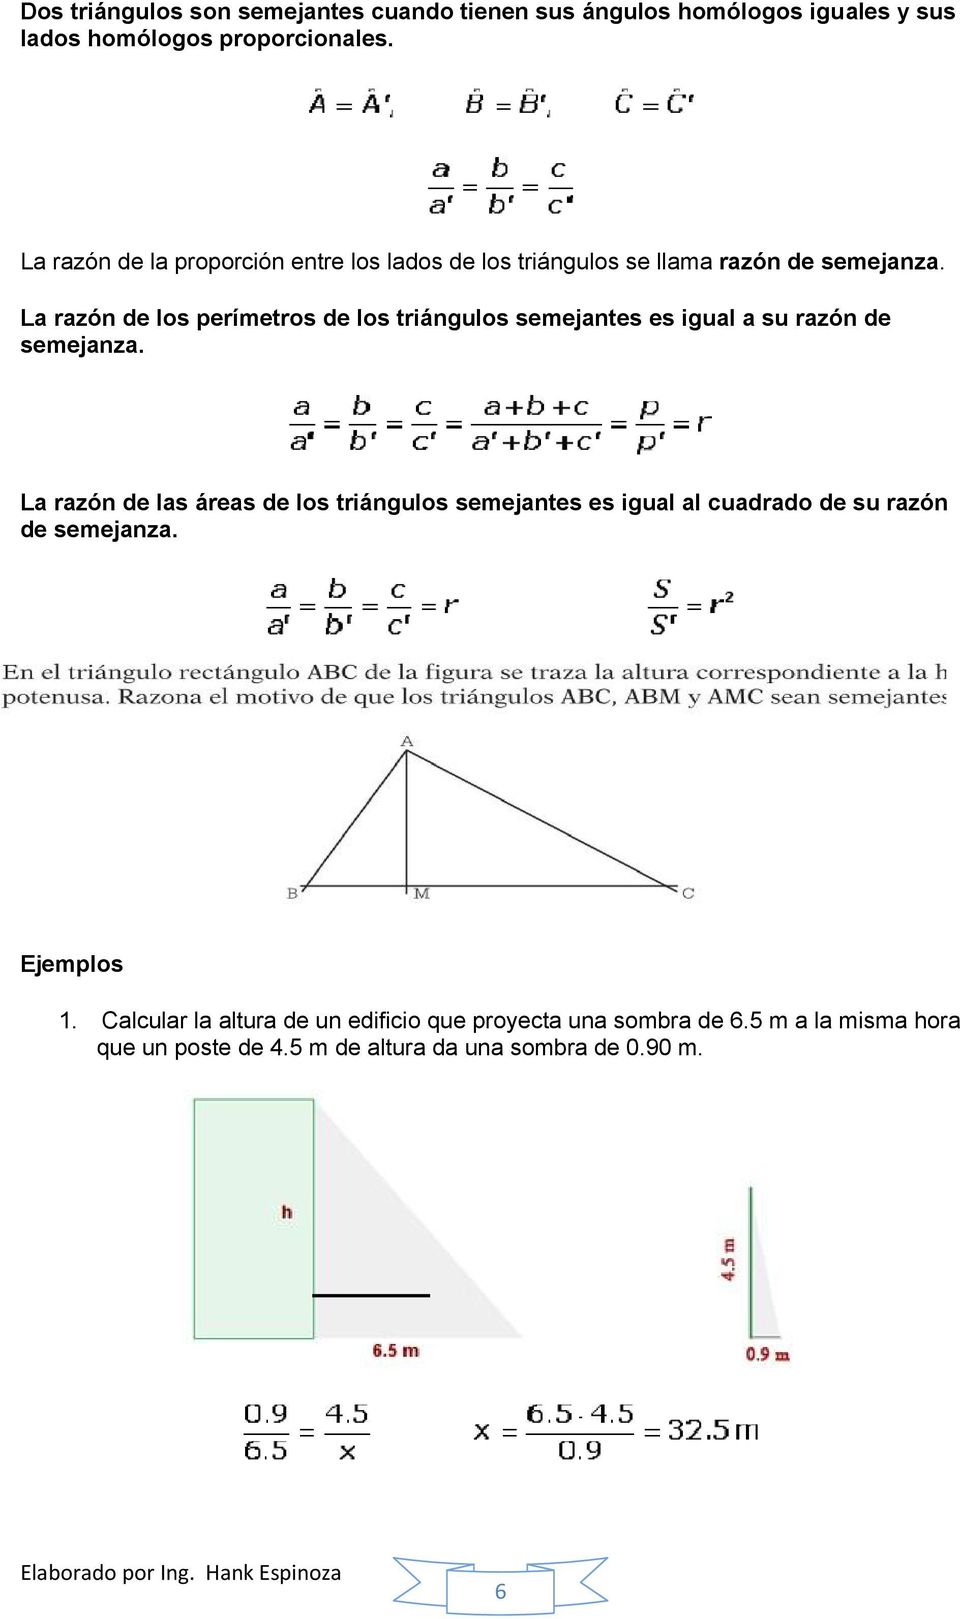 La razón de los perímetros de los triángulos semejantes es igual a su razón de semejanza.